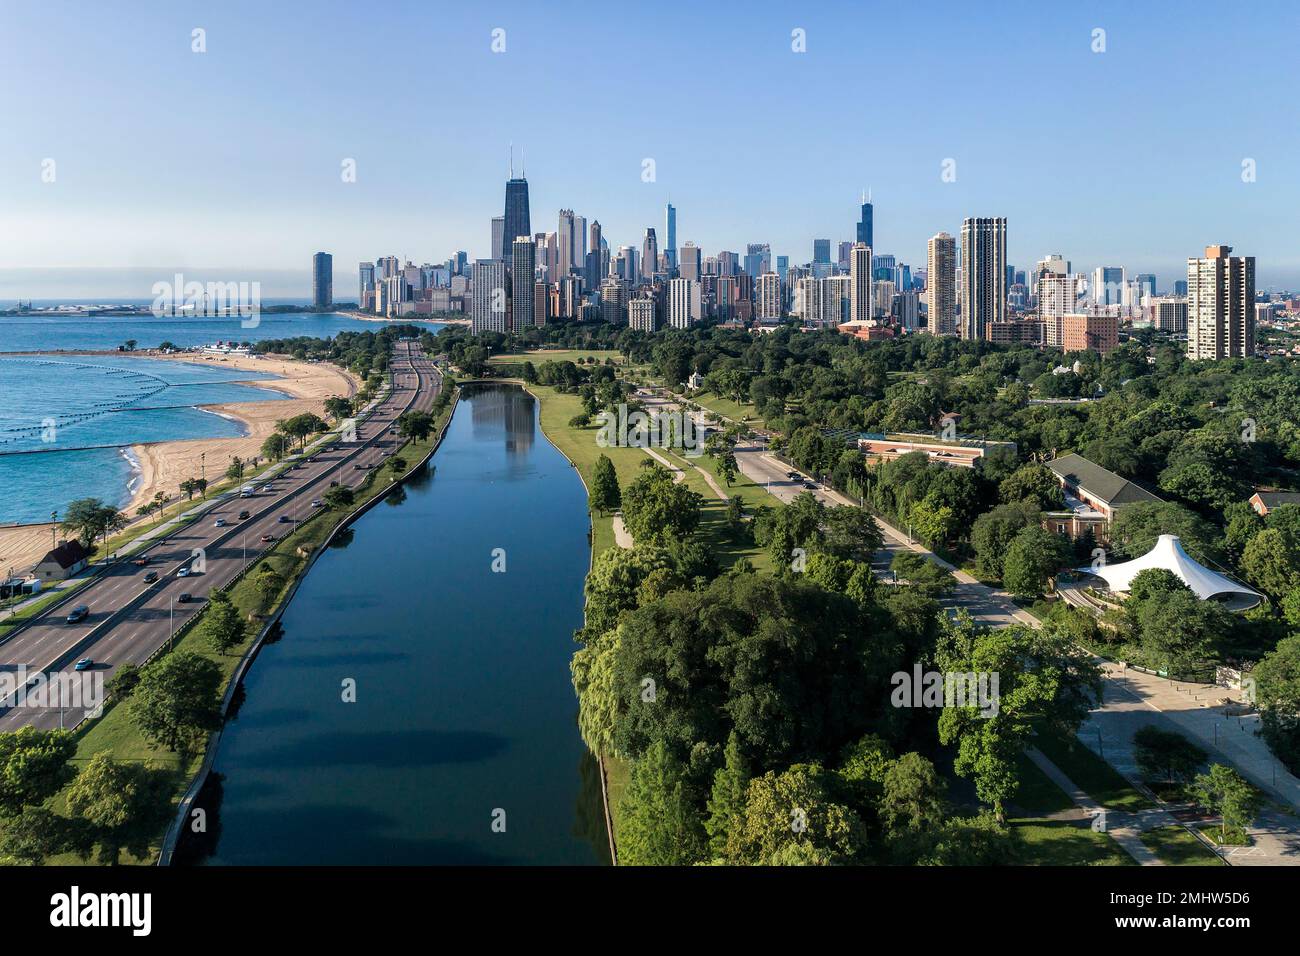 Vue aérienne de l'étang sud du zoo de Lincoln Park en direction du sud vers le centre-ville de Chicago pendant une matinée d'été claire. Banque D'Images